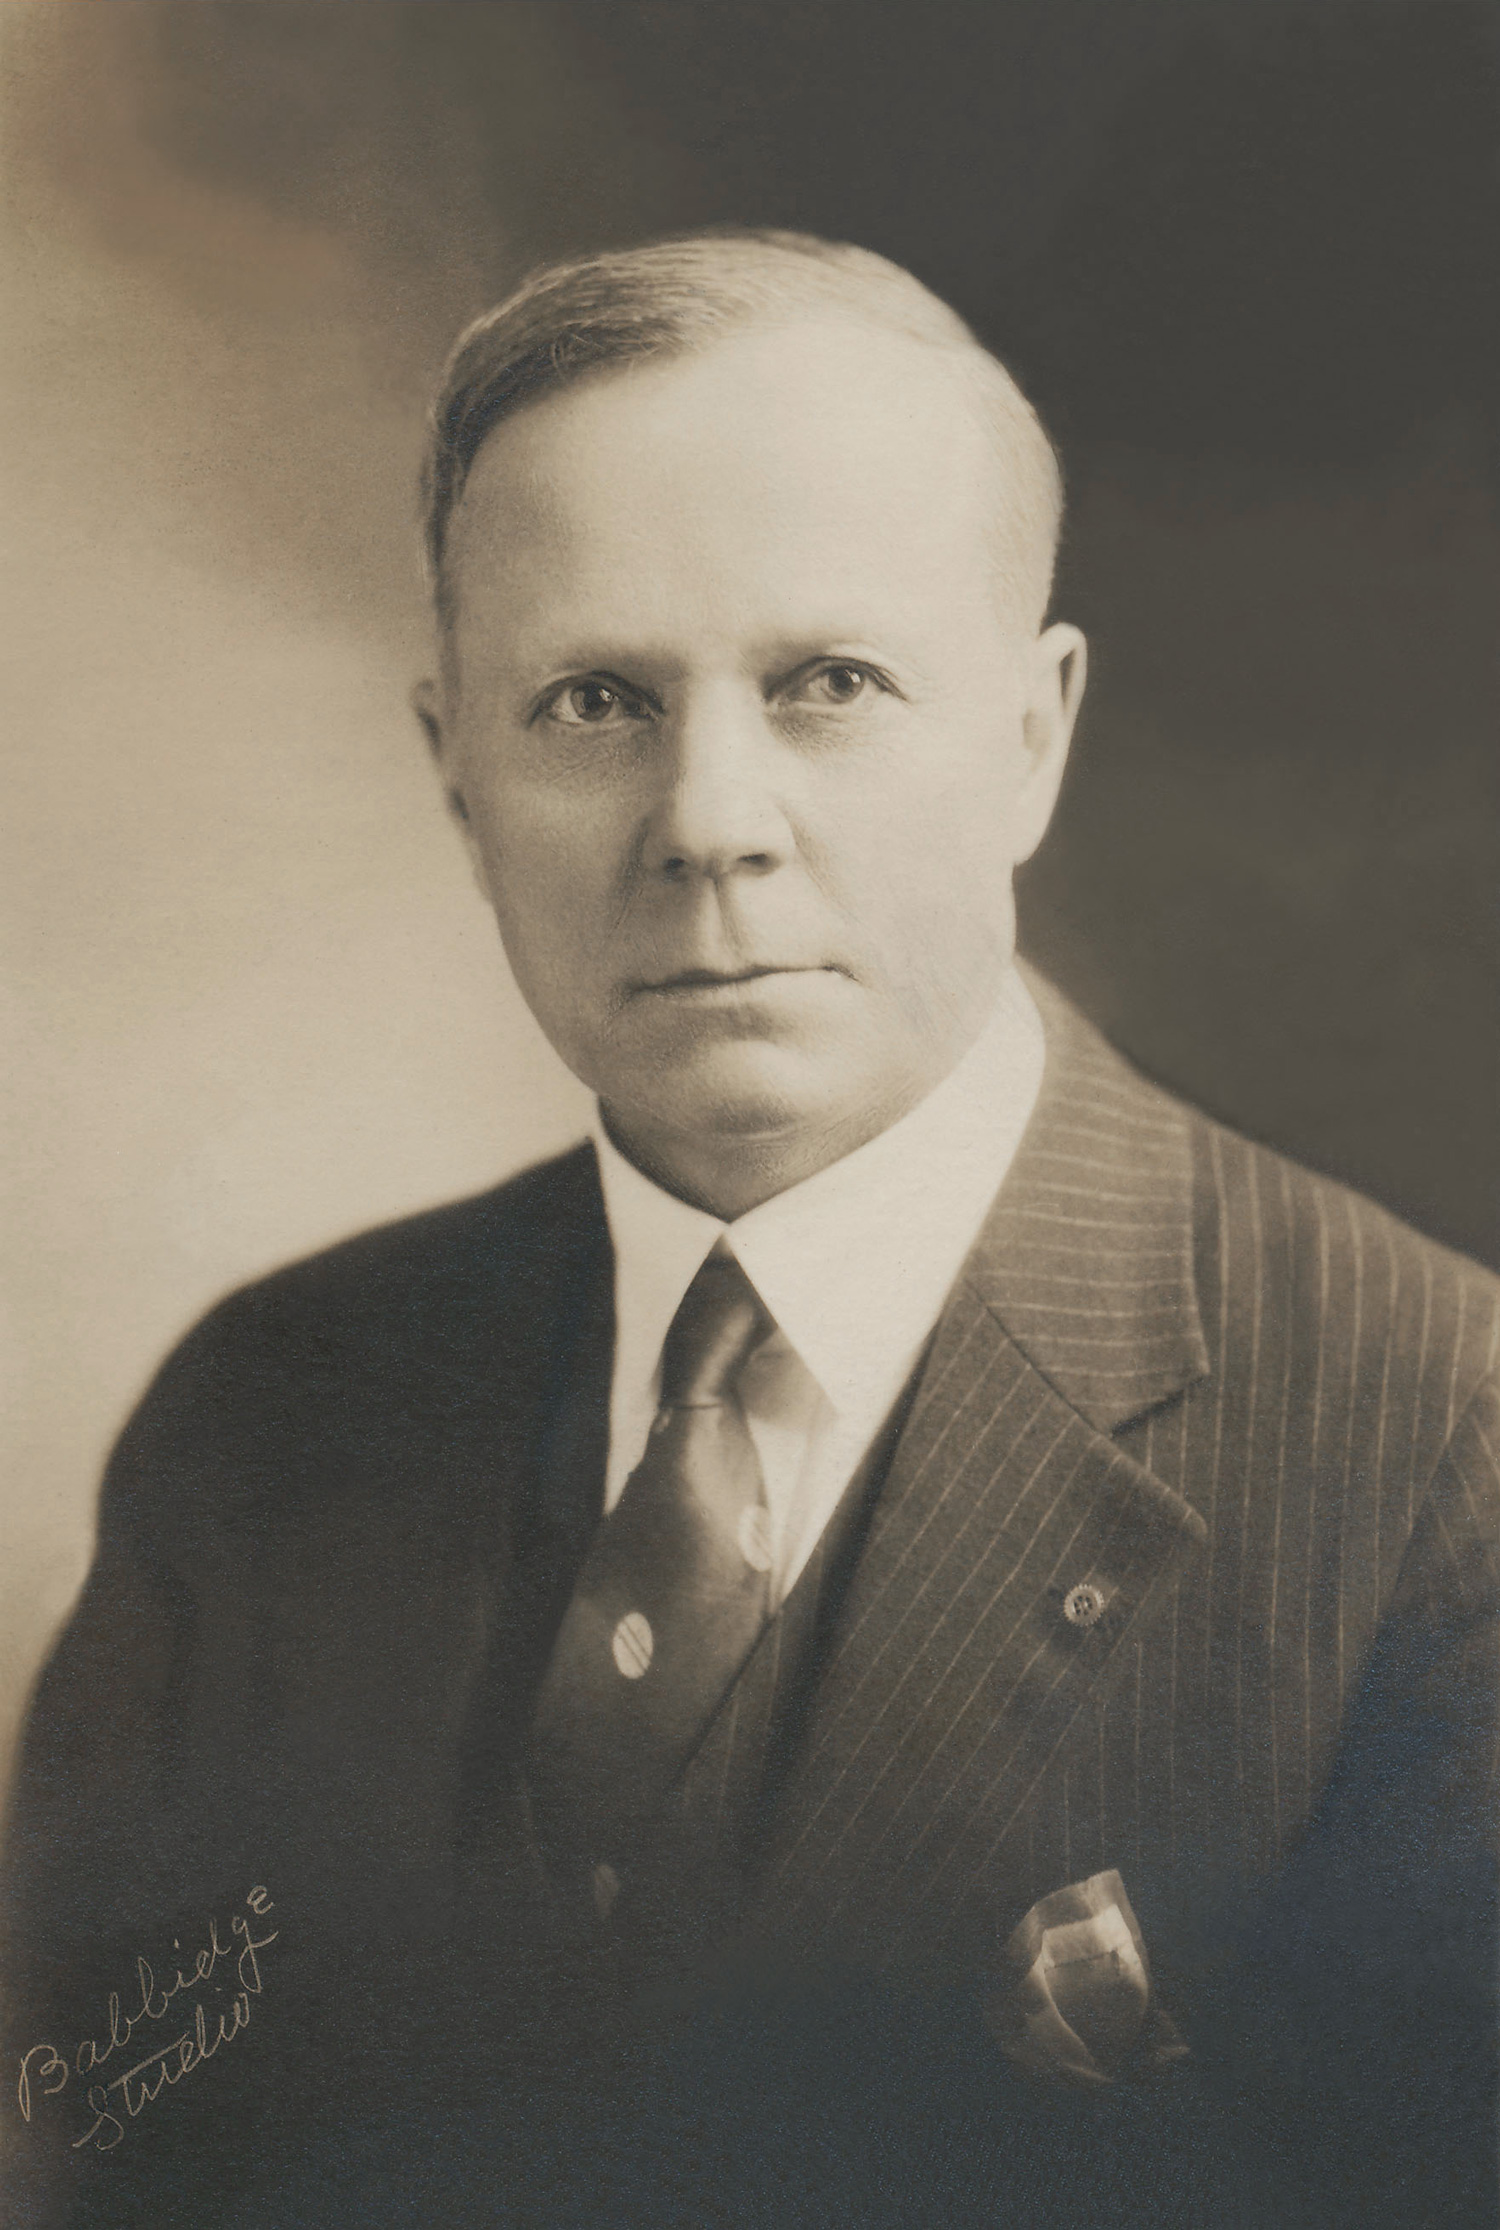 Edwin L. Brown, penman